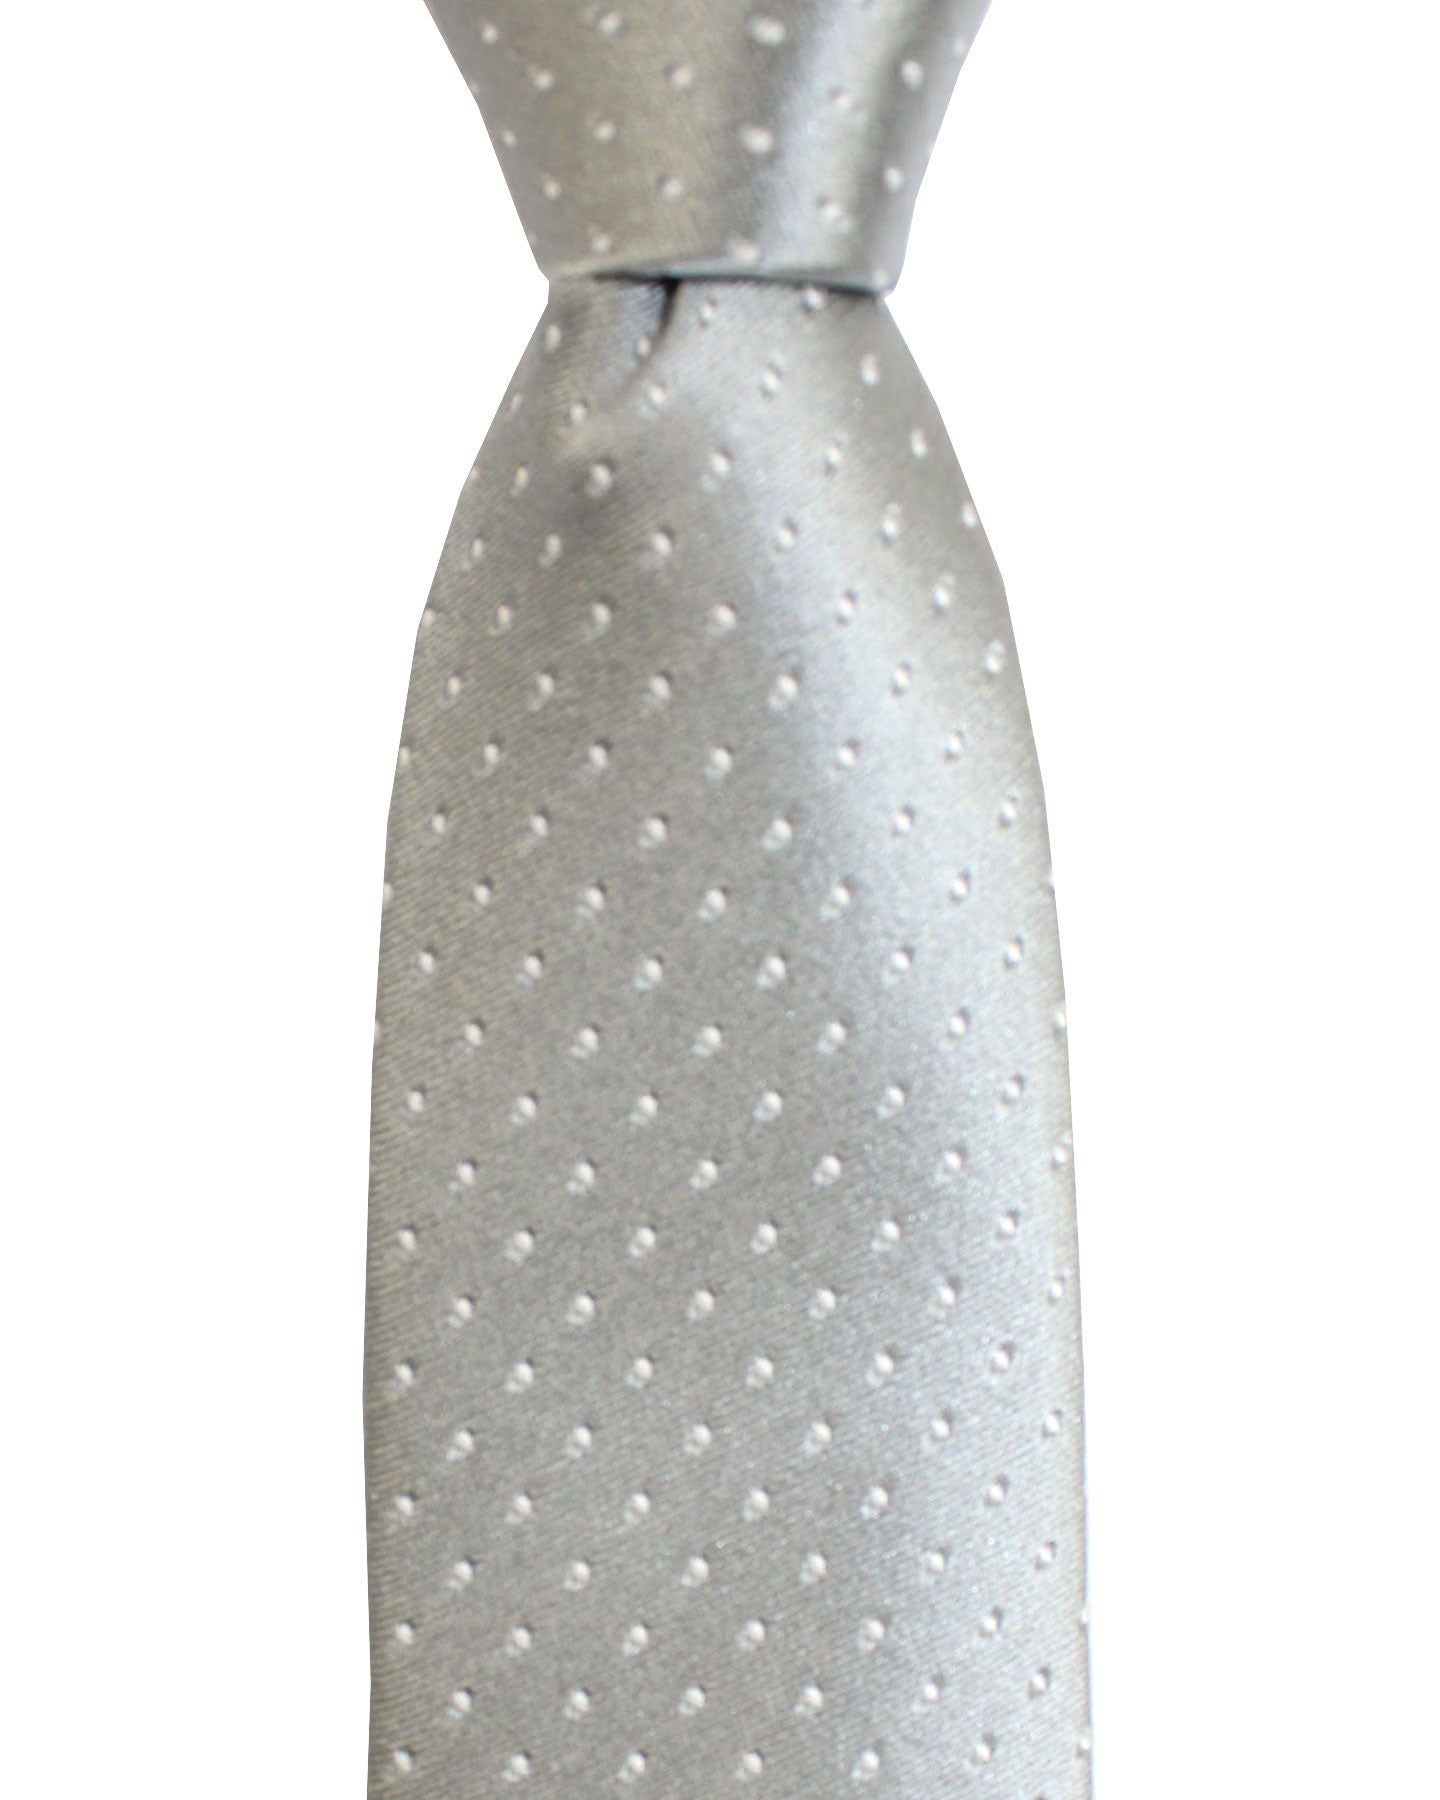 Ungaro Silk Tie Gray Micro Dots - Narrow Cut Designer Necktie